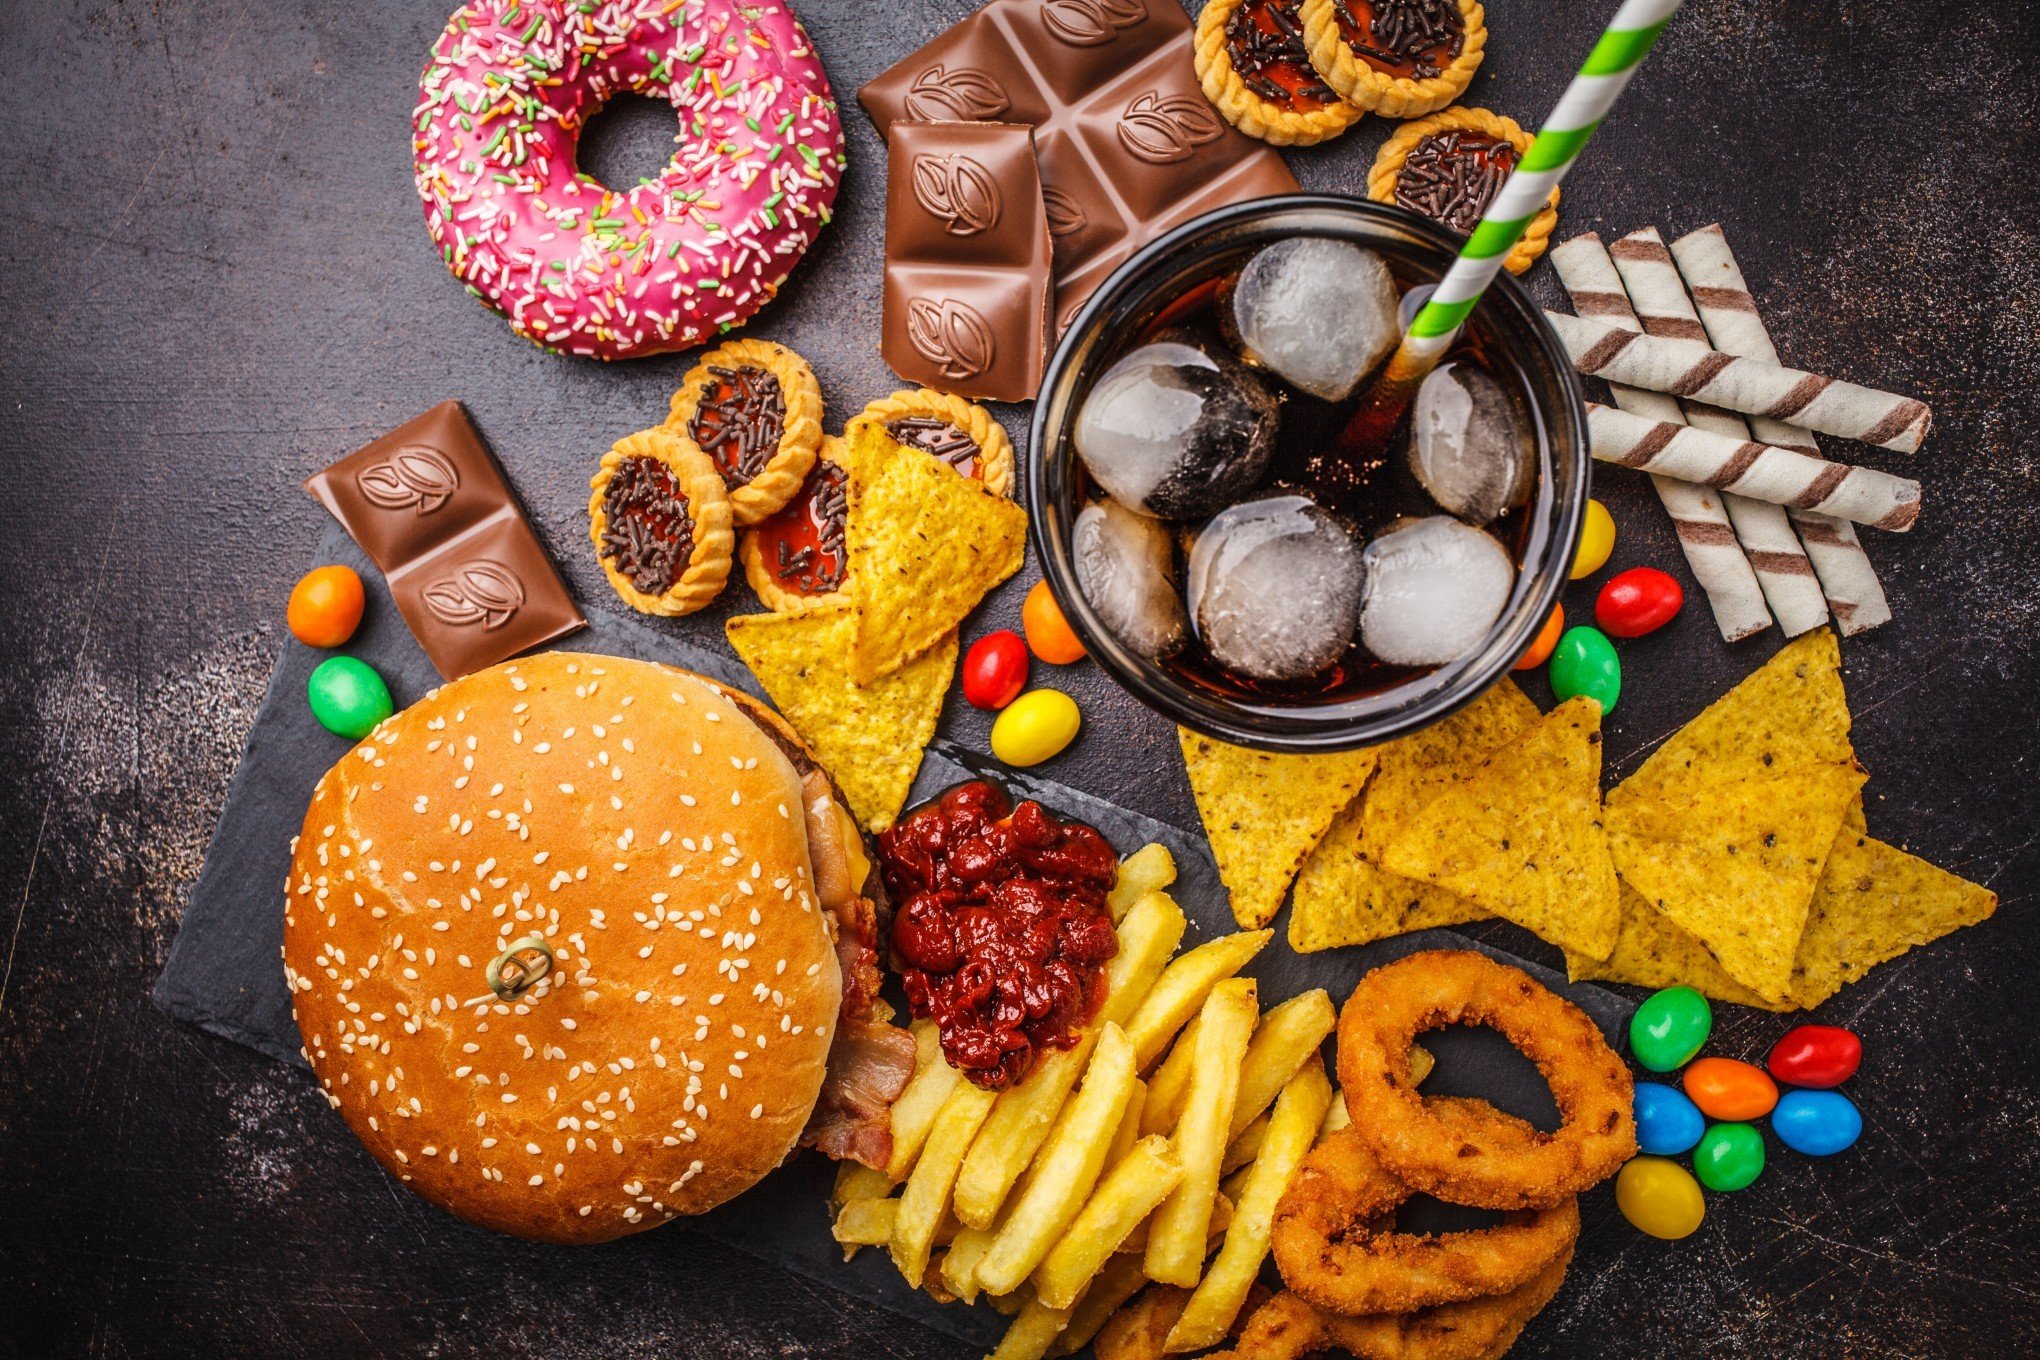 Países buscam alternativas para reter o consumo das junk foods; conheça